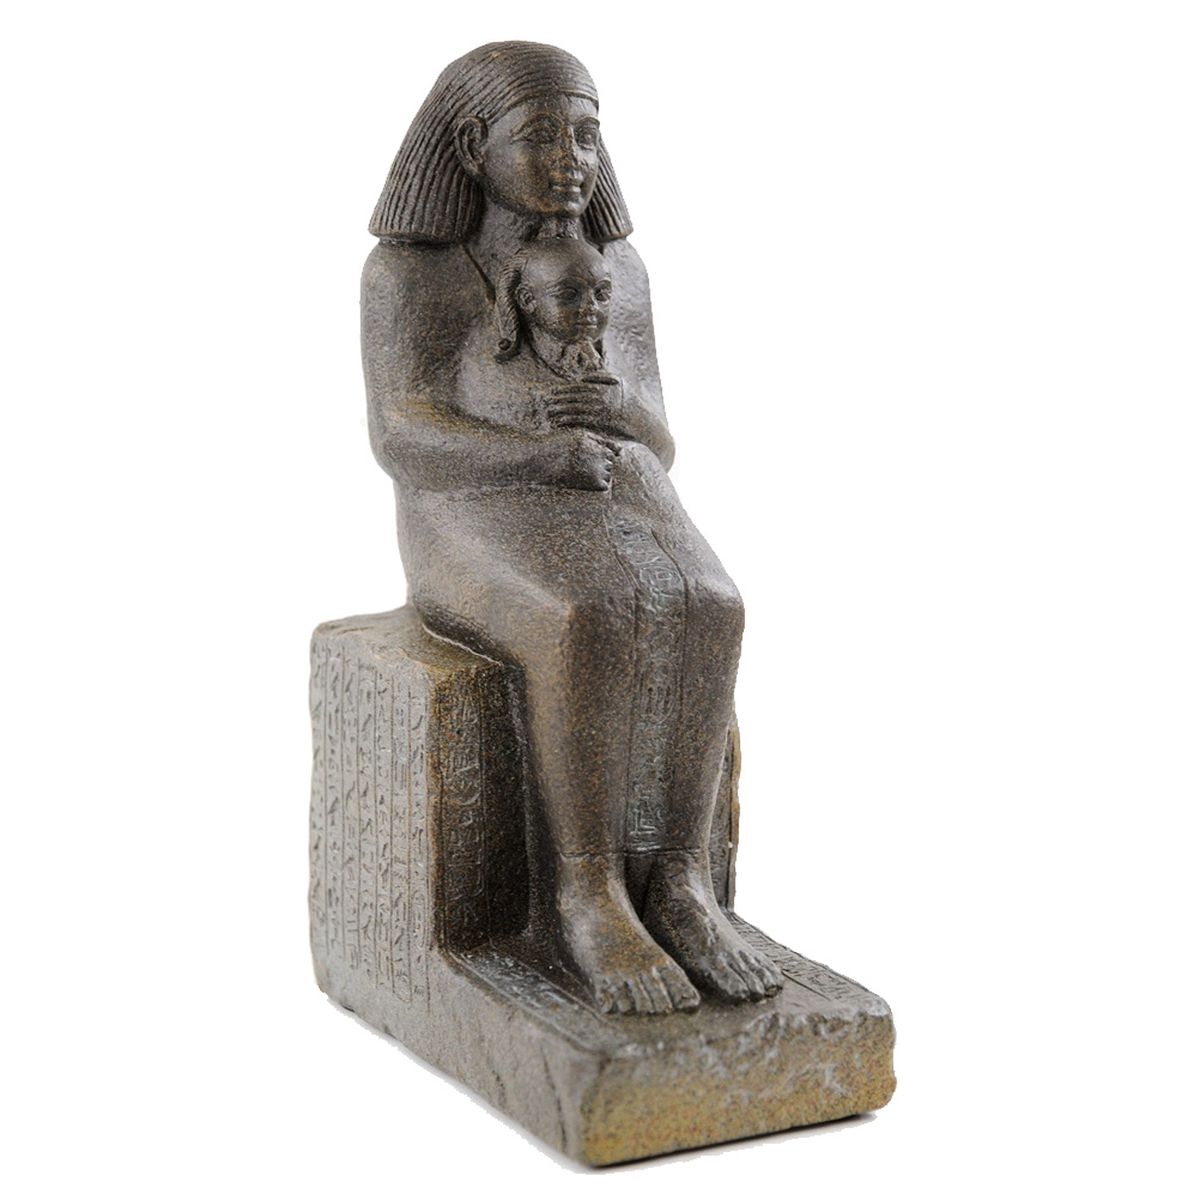 Figurine Senenmout avec la Princesse Neferoura - Egypte